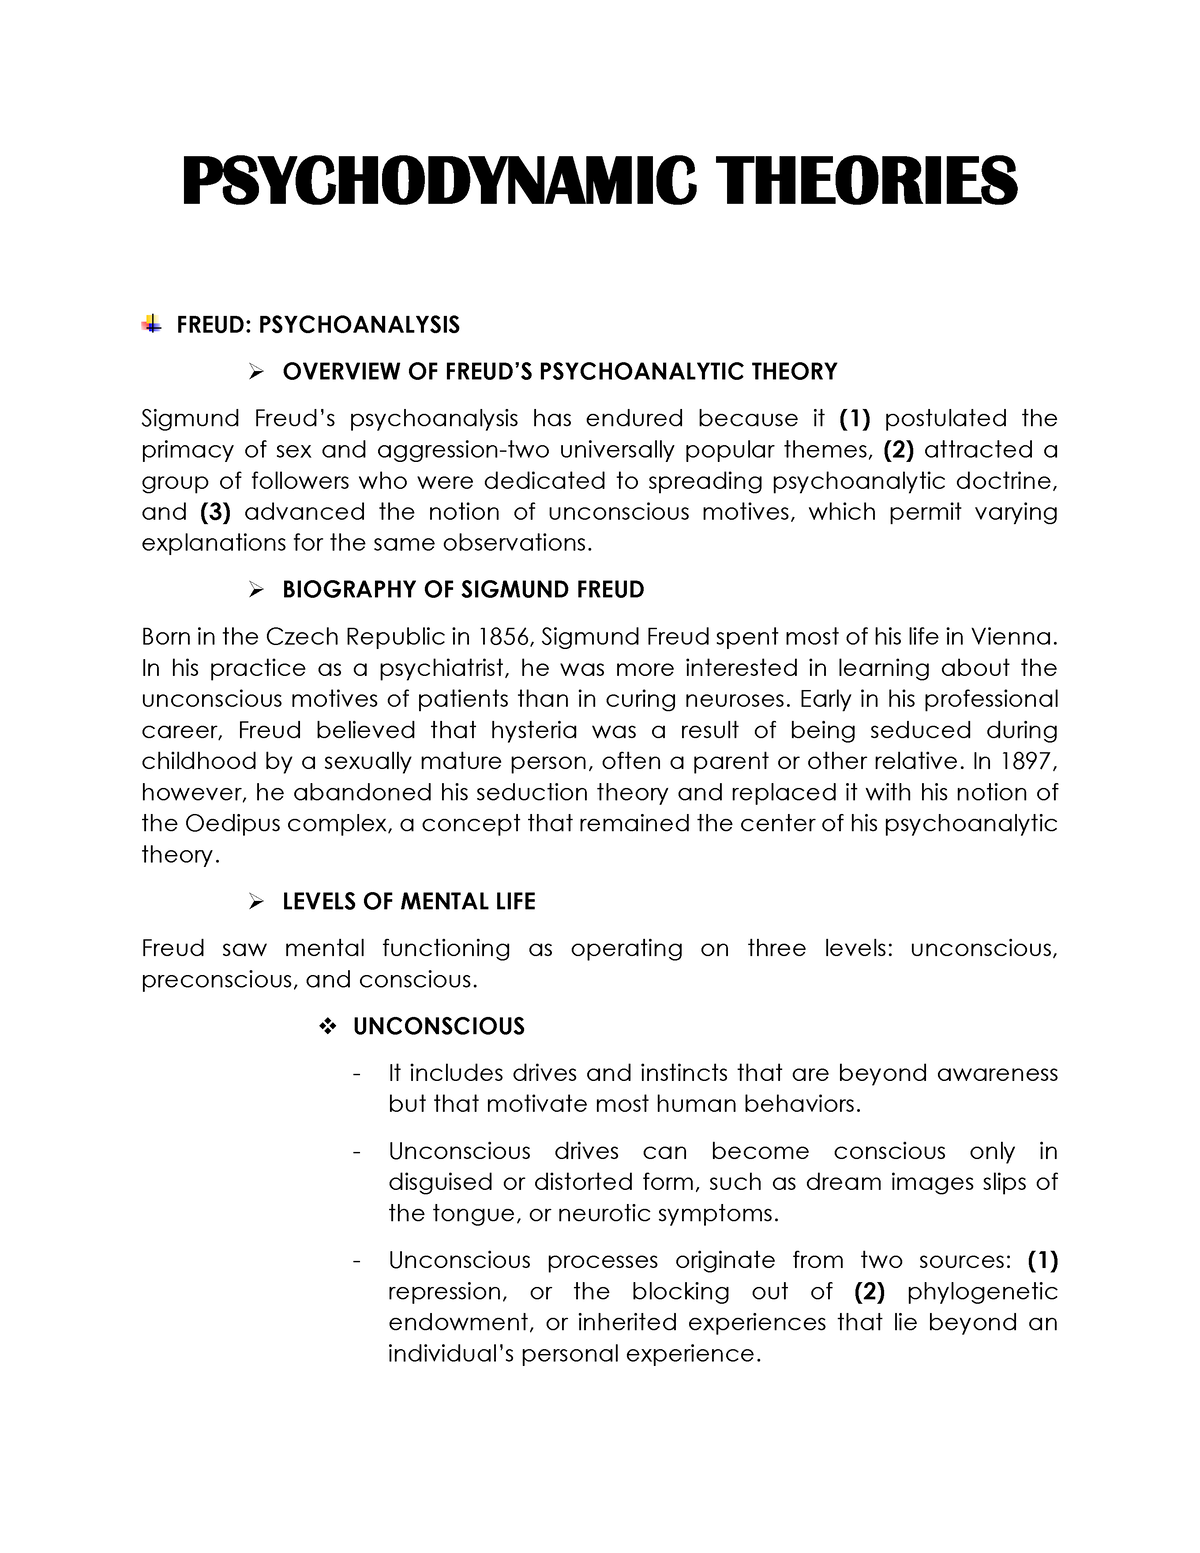 Psychodynamic Theories - PSYCHODYNAMIC THEORIES FREUD: PSYCHOANALYSIS ...